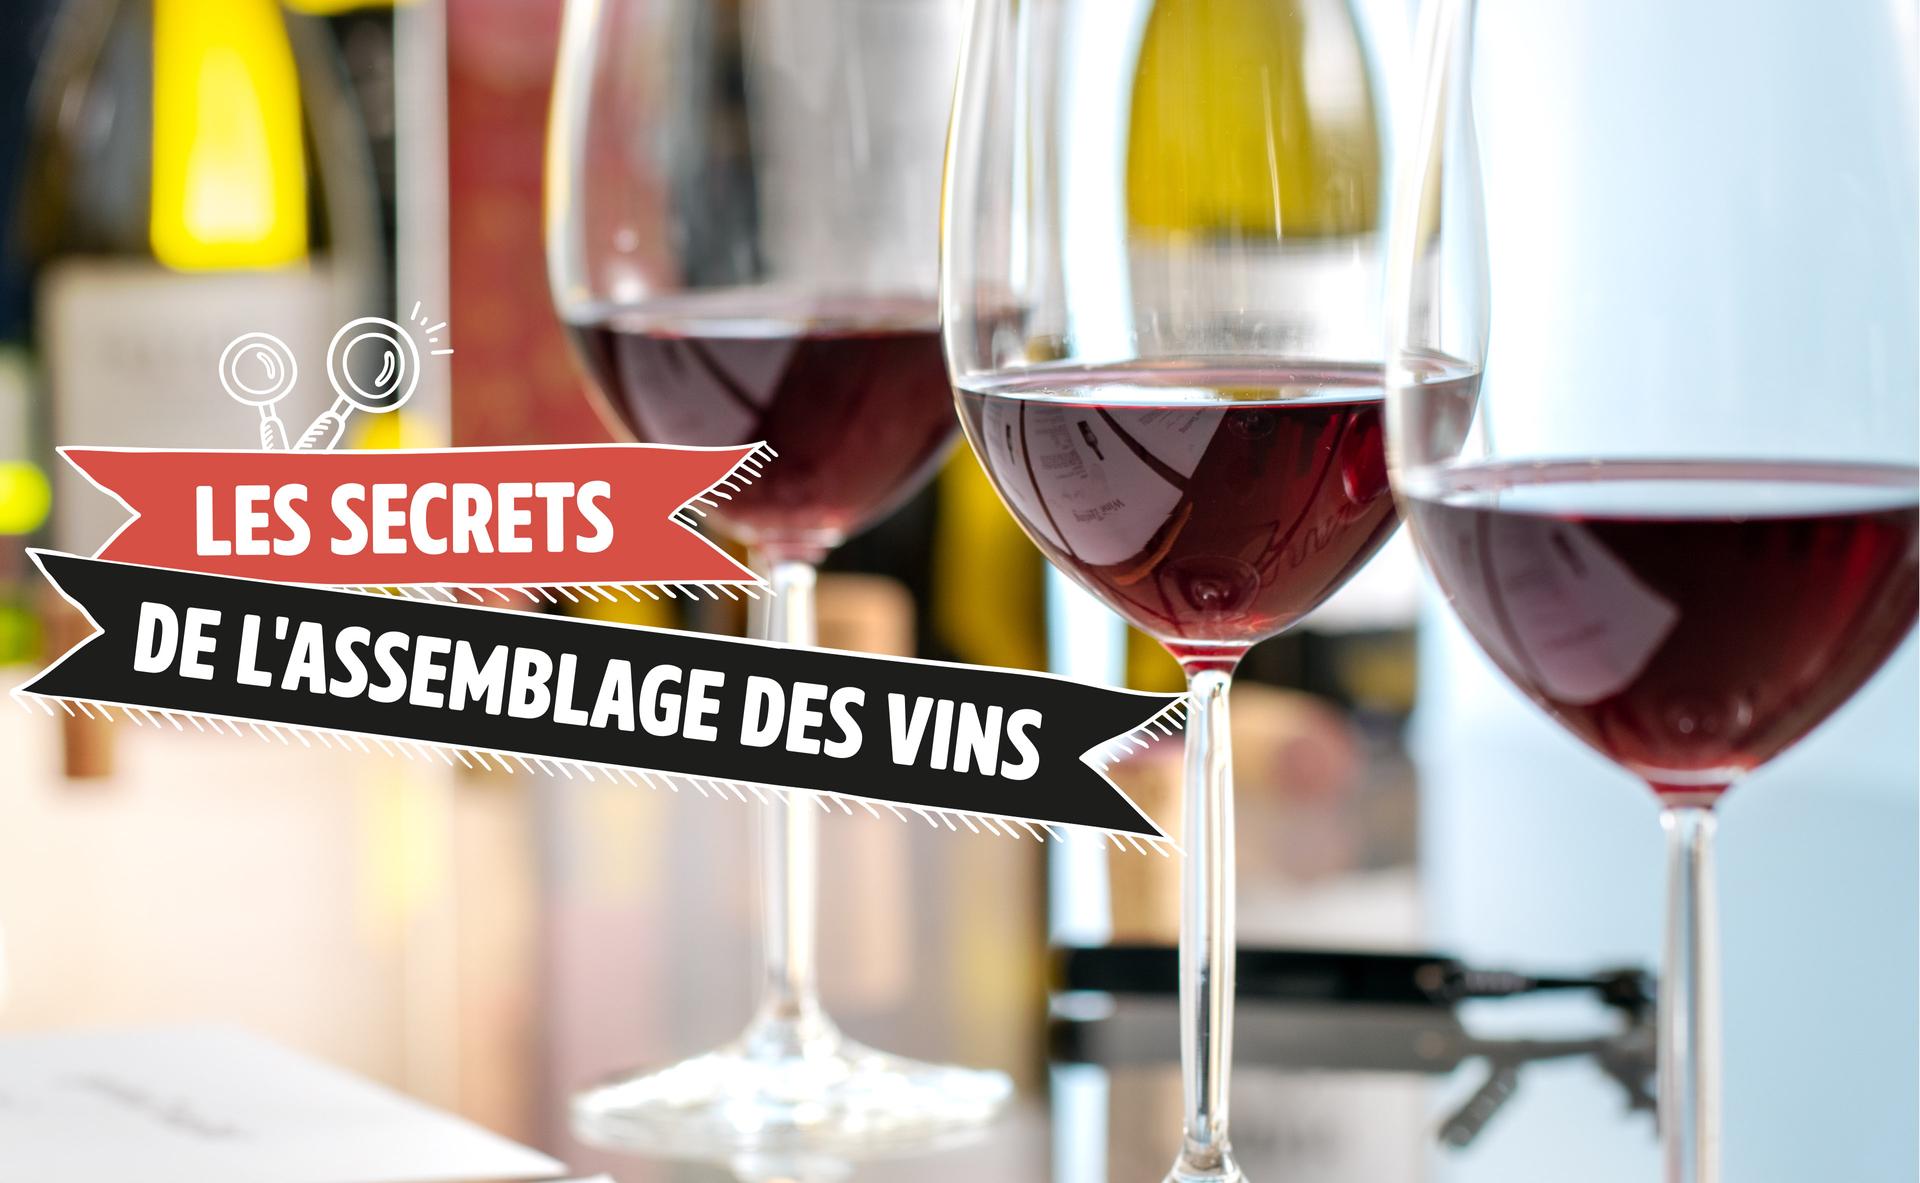 Les secrets de l'assemblage des vins